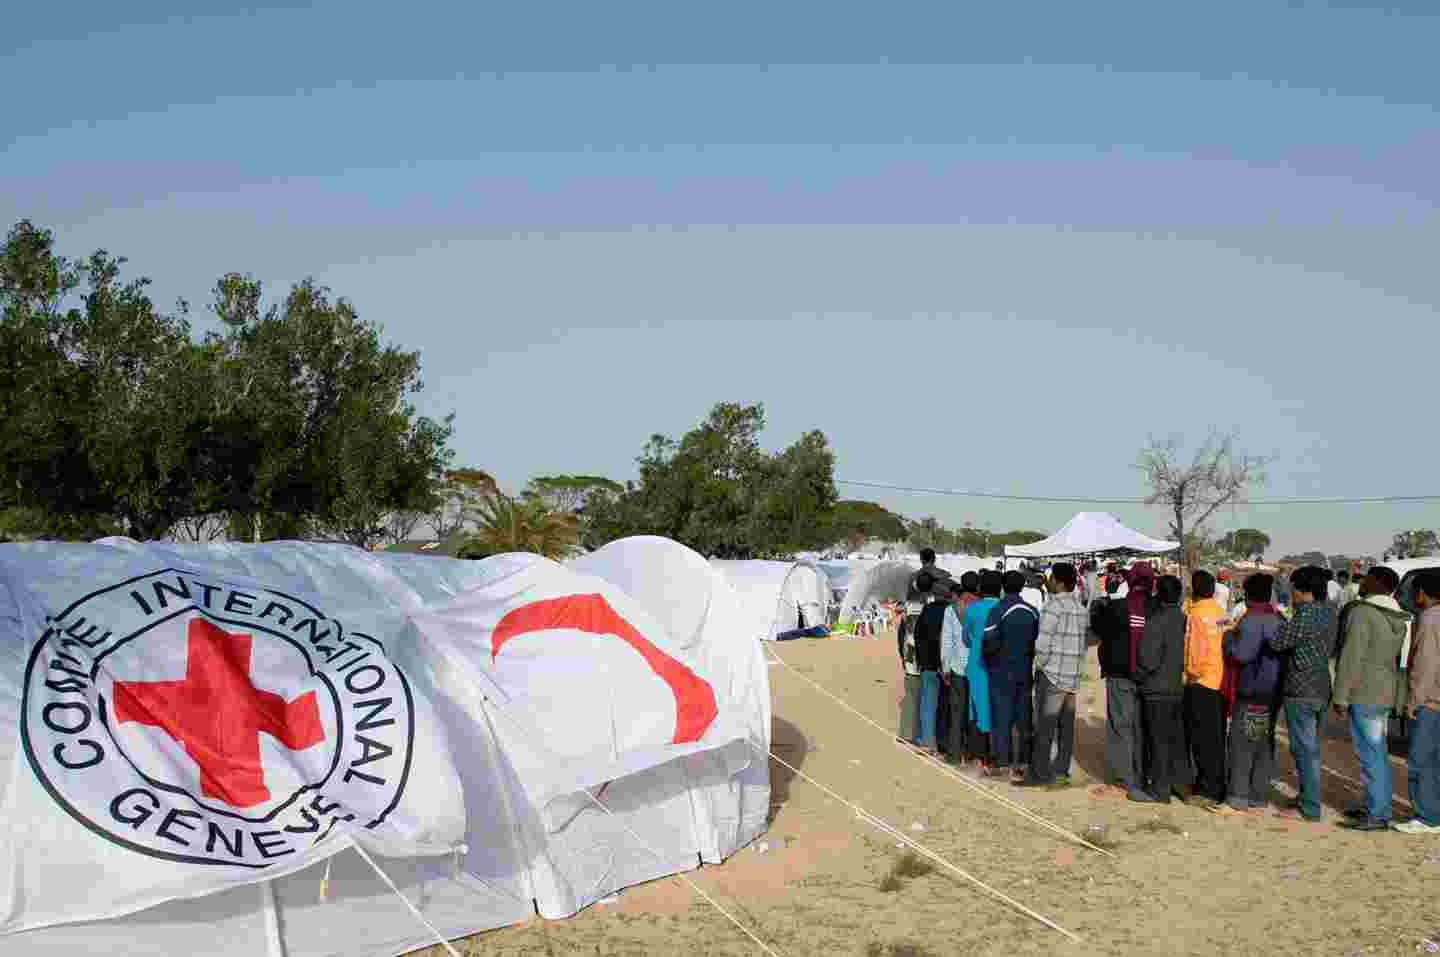 Ihmisiä jonossa pakolaisleirilla Punaisen Ristin tunnuksin varustettujen telttojen keskellä.